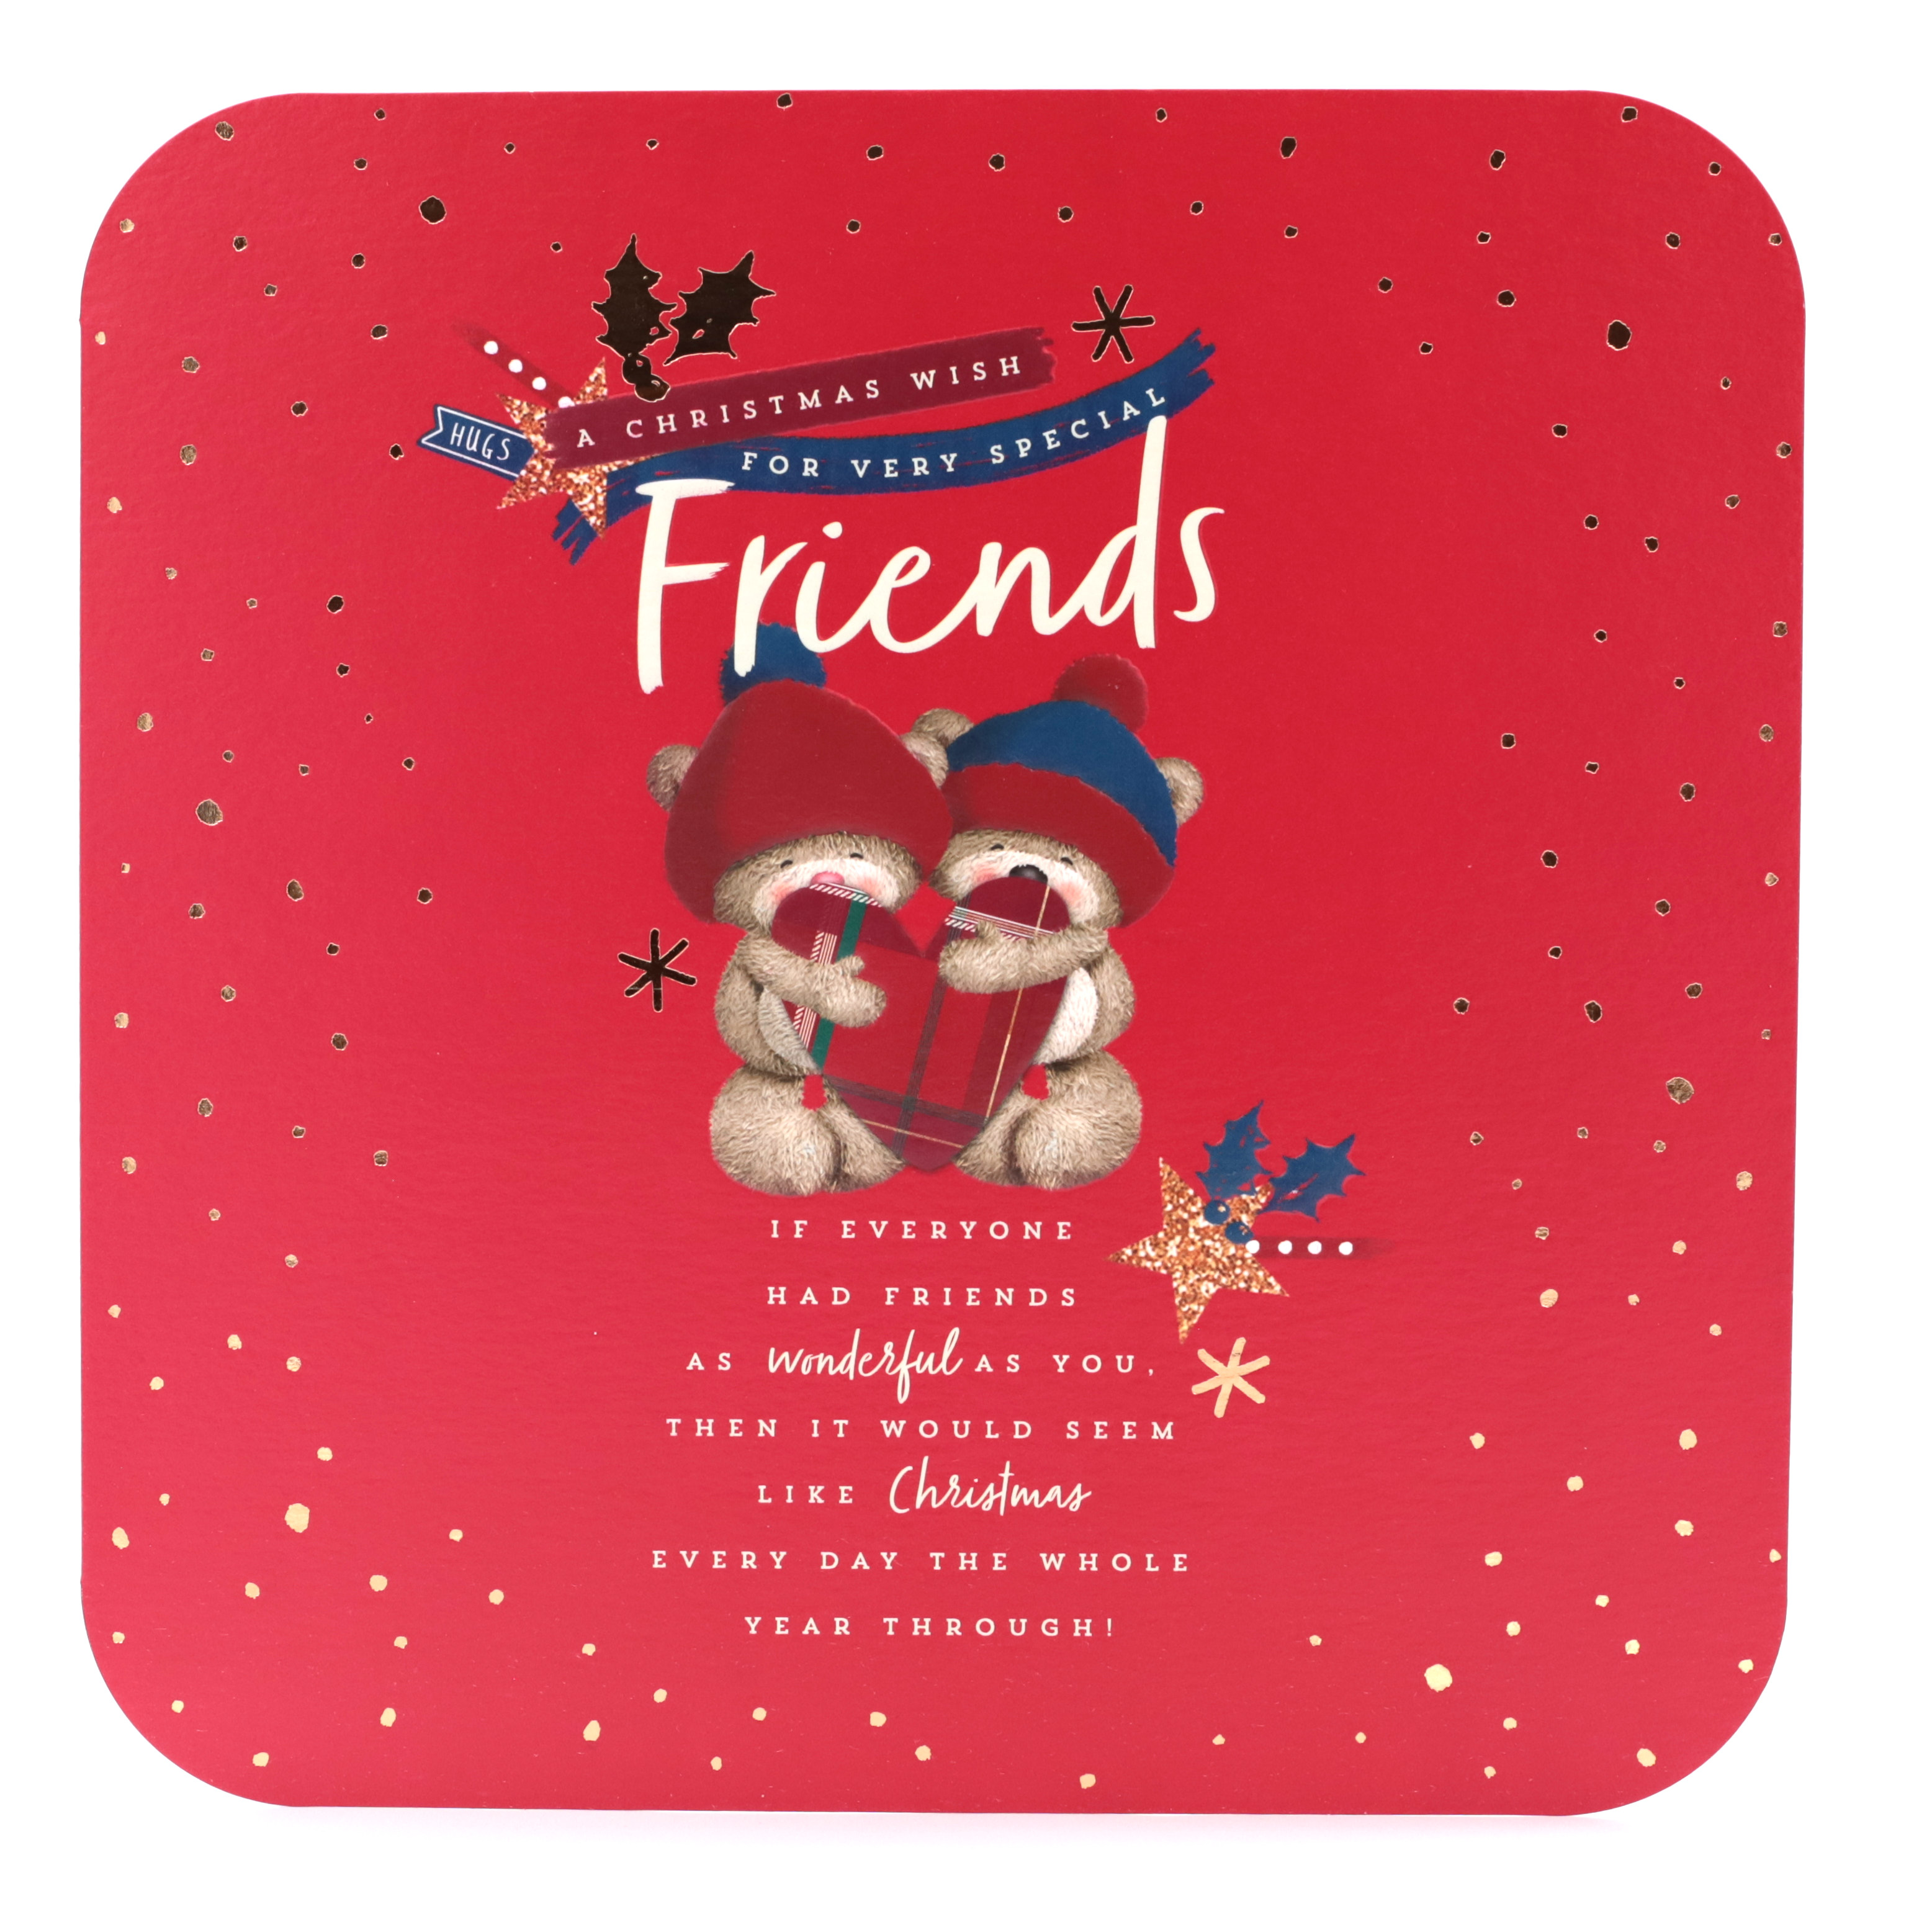 Hugs Bear Christmas Card - Friends, Cute Bears With Present